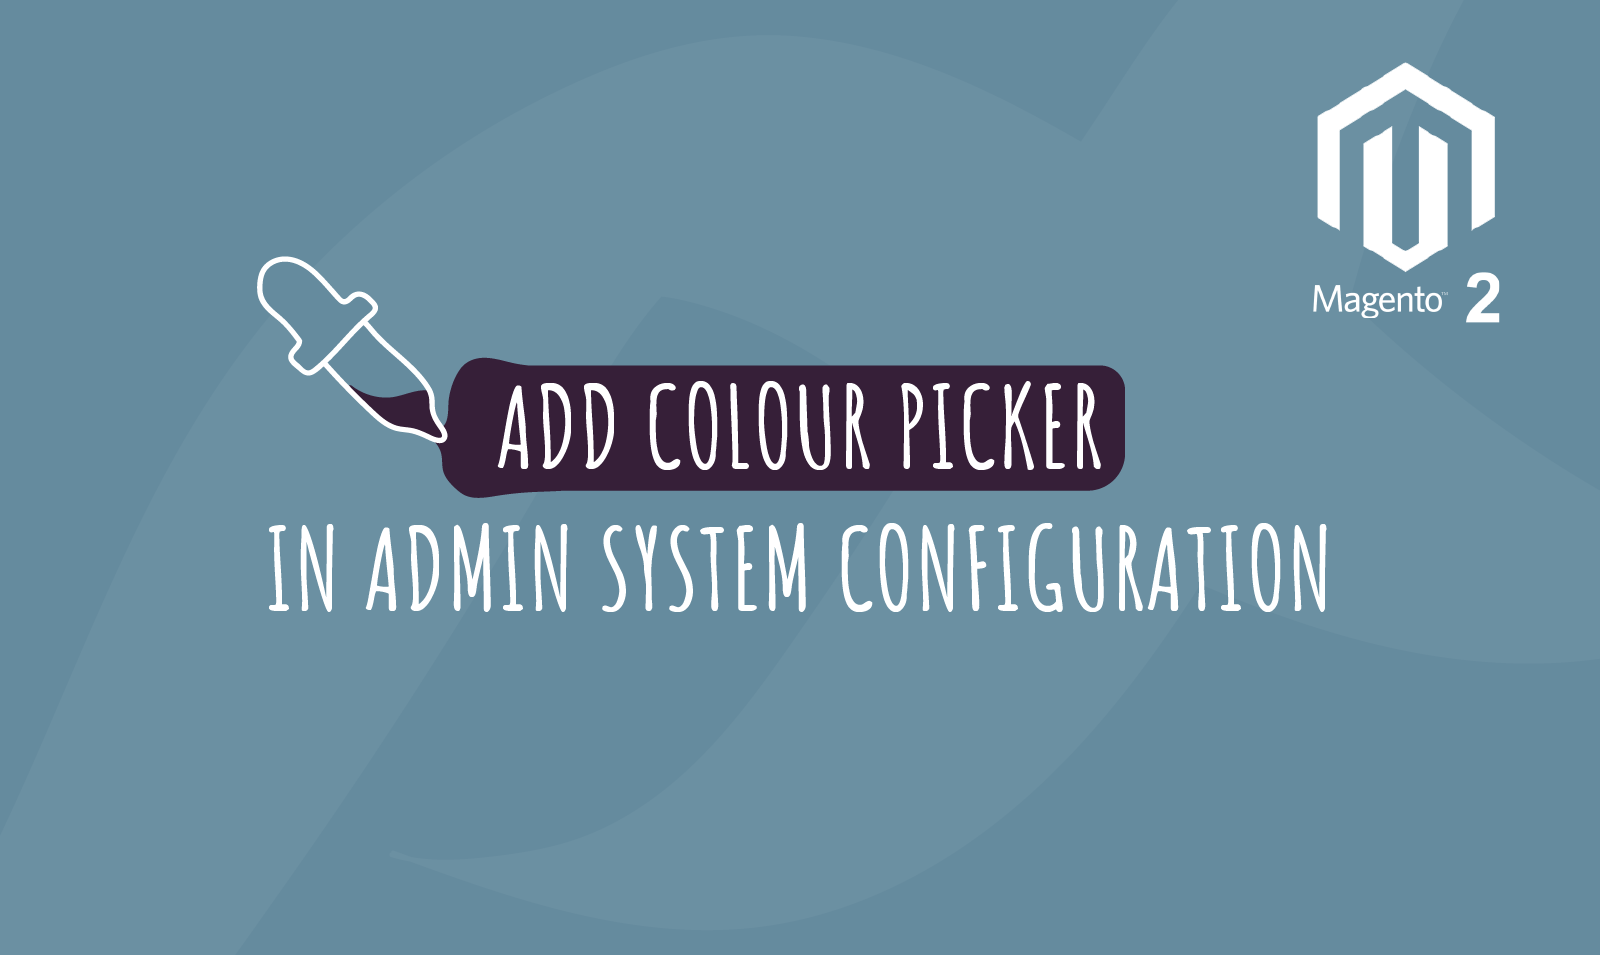 Magento 2 - Add colour picker in admin system configuration